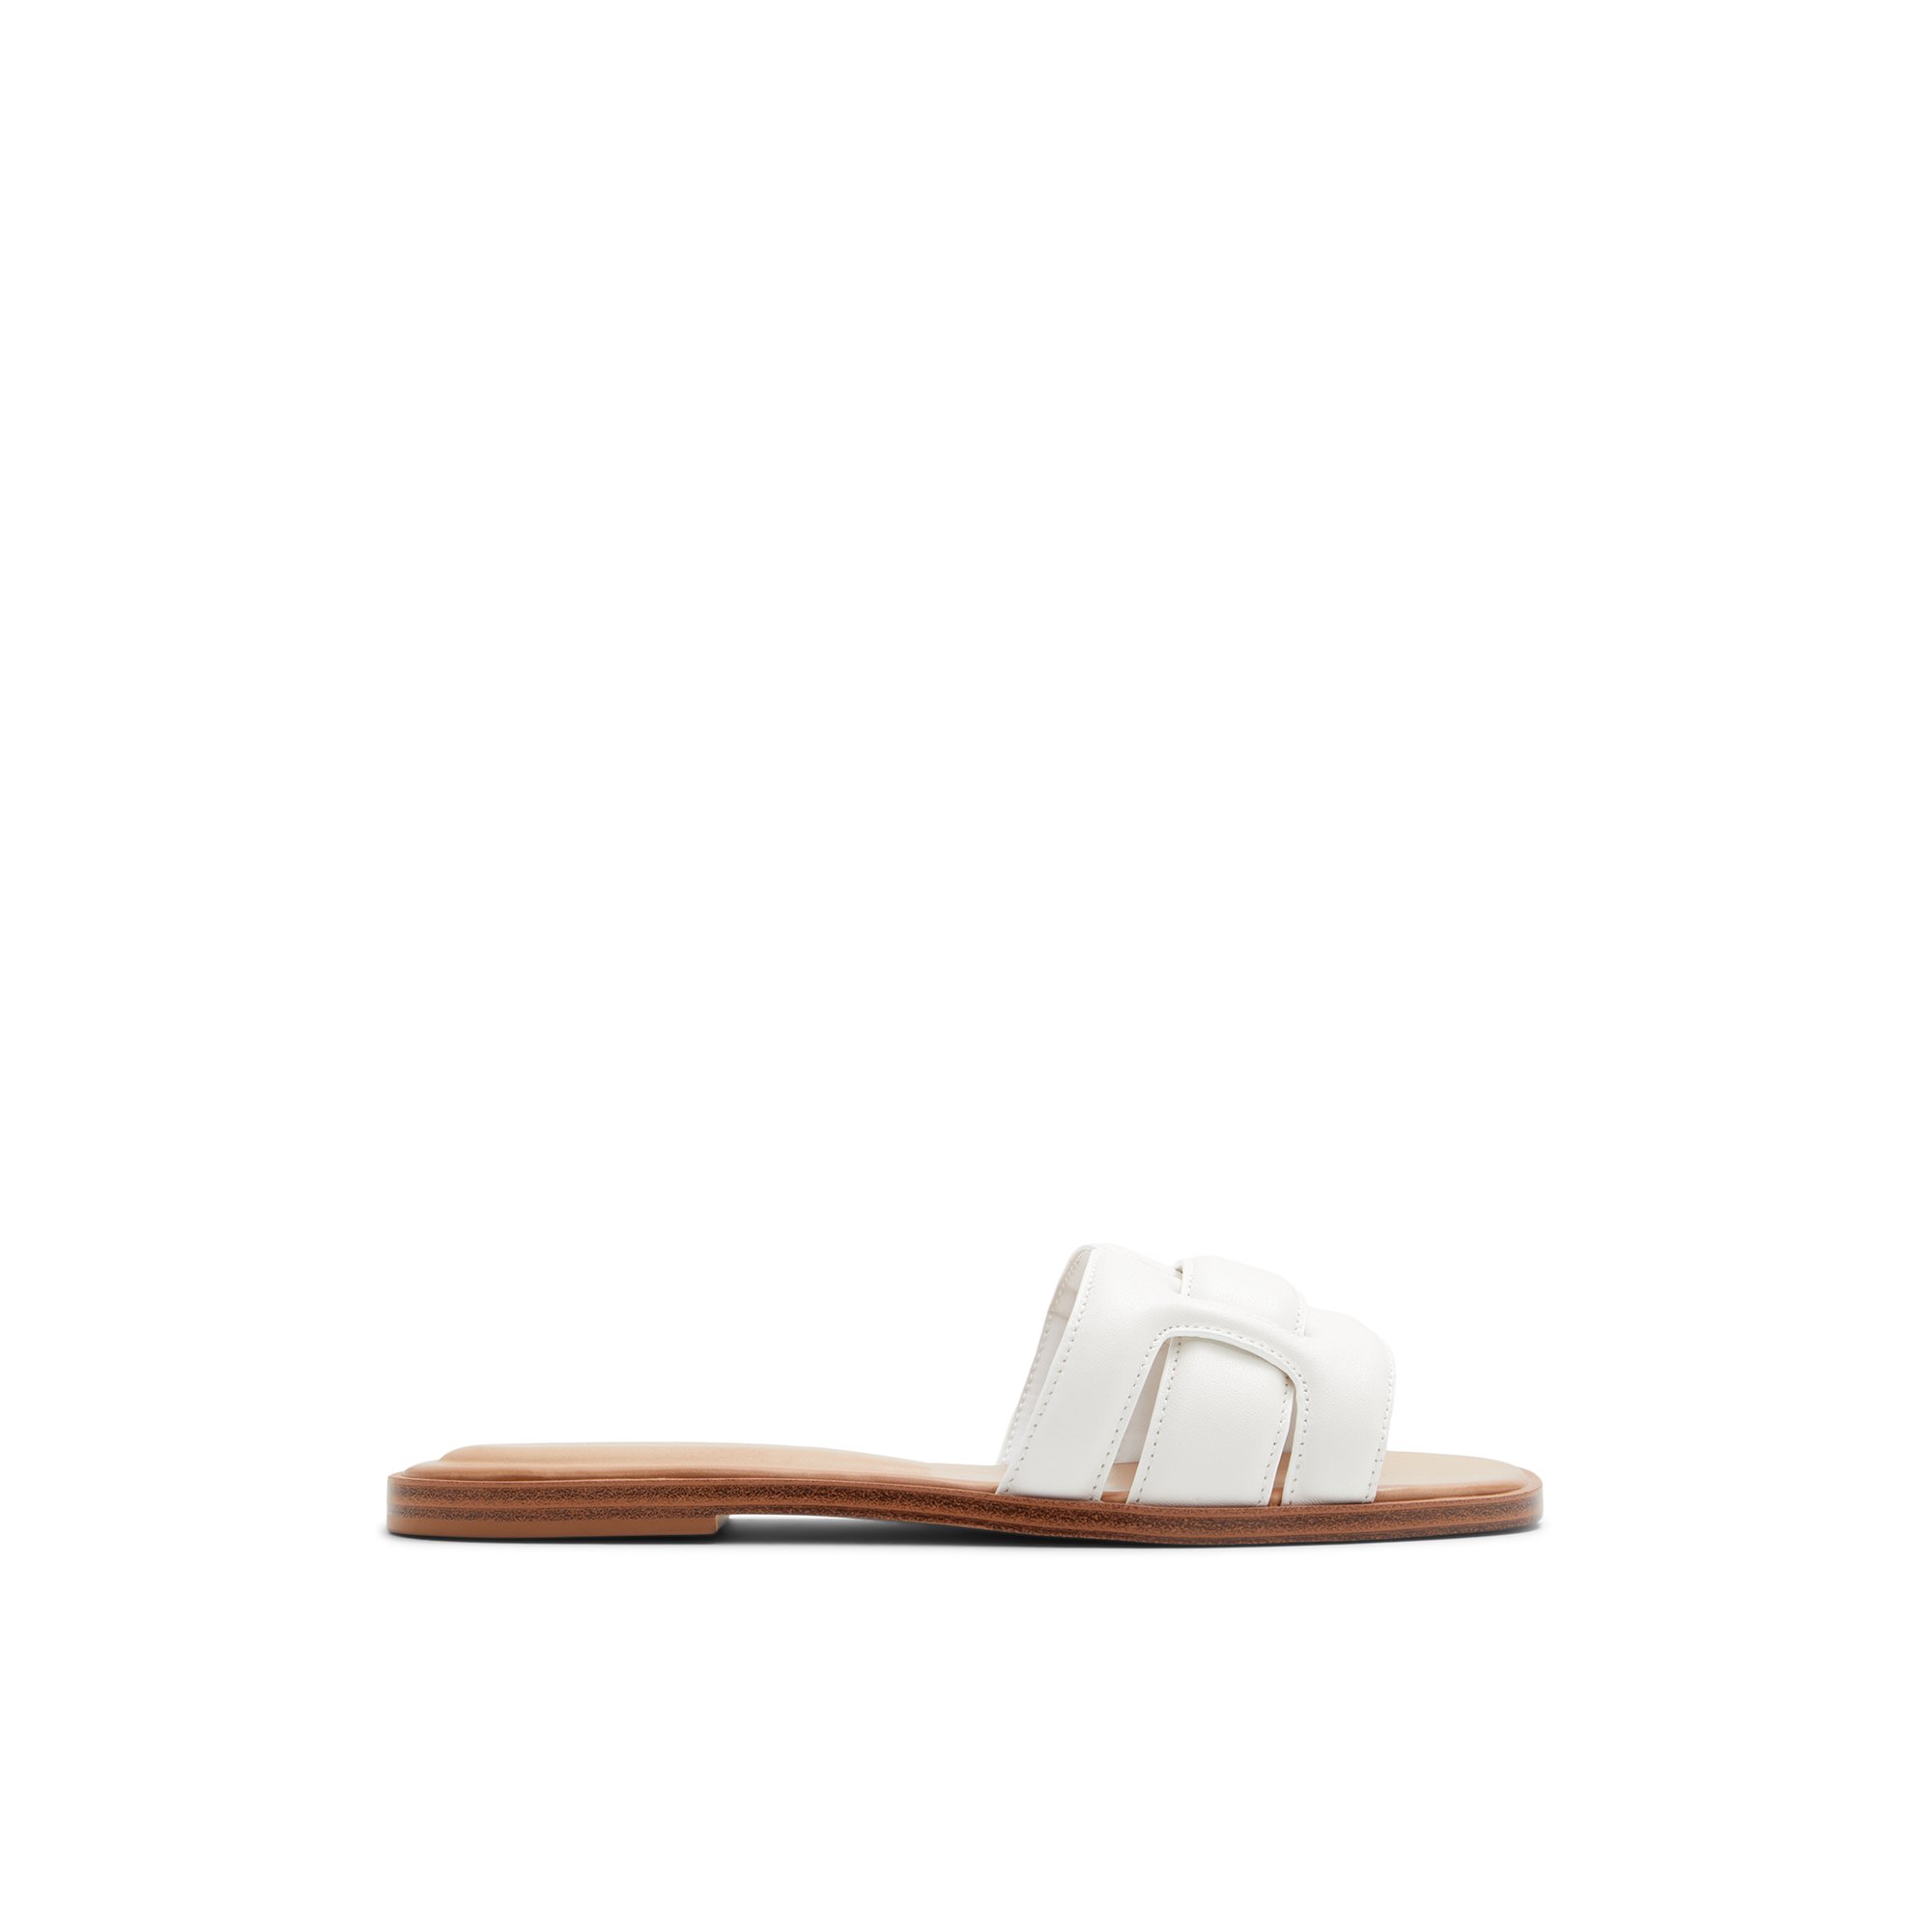 ALDO Elenaa - Women's Flat Sandals - White